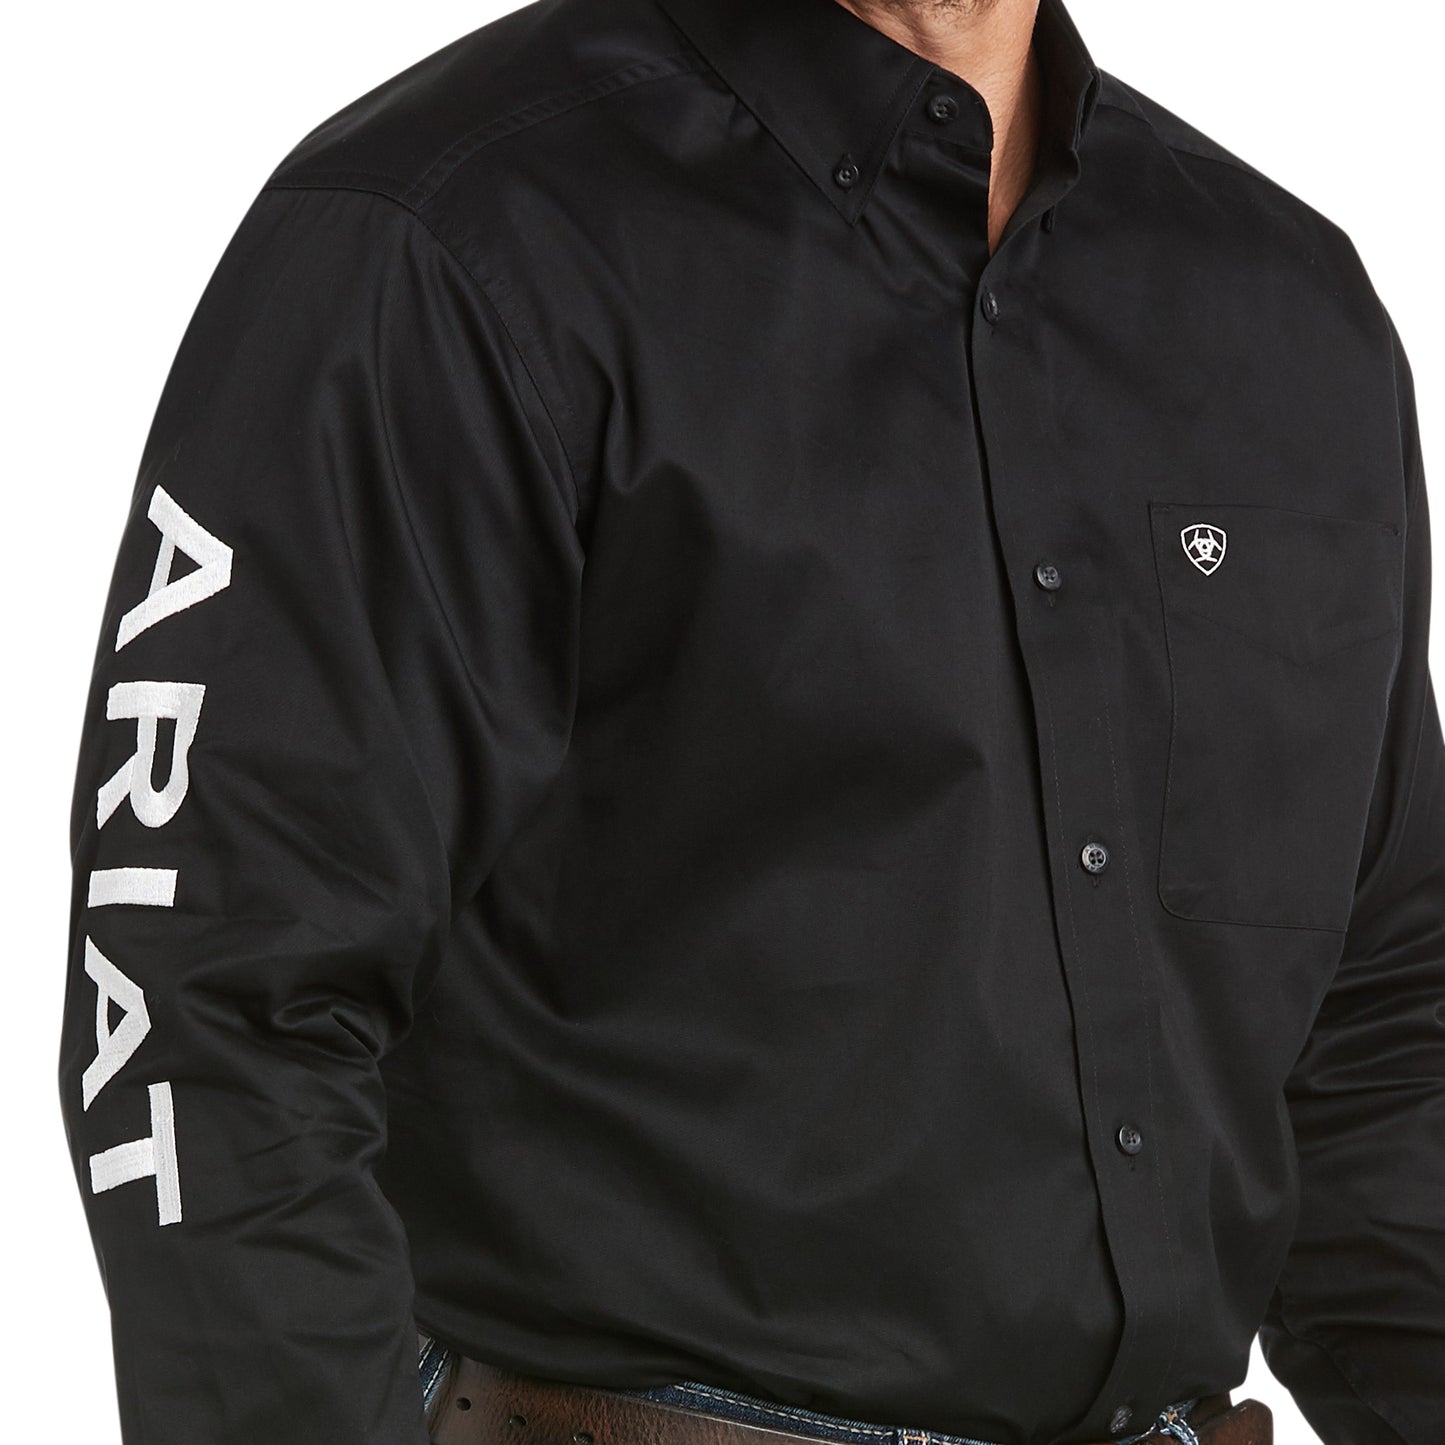 Ariat Team Logo Twill Classic Fit Shirt - Black